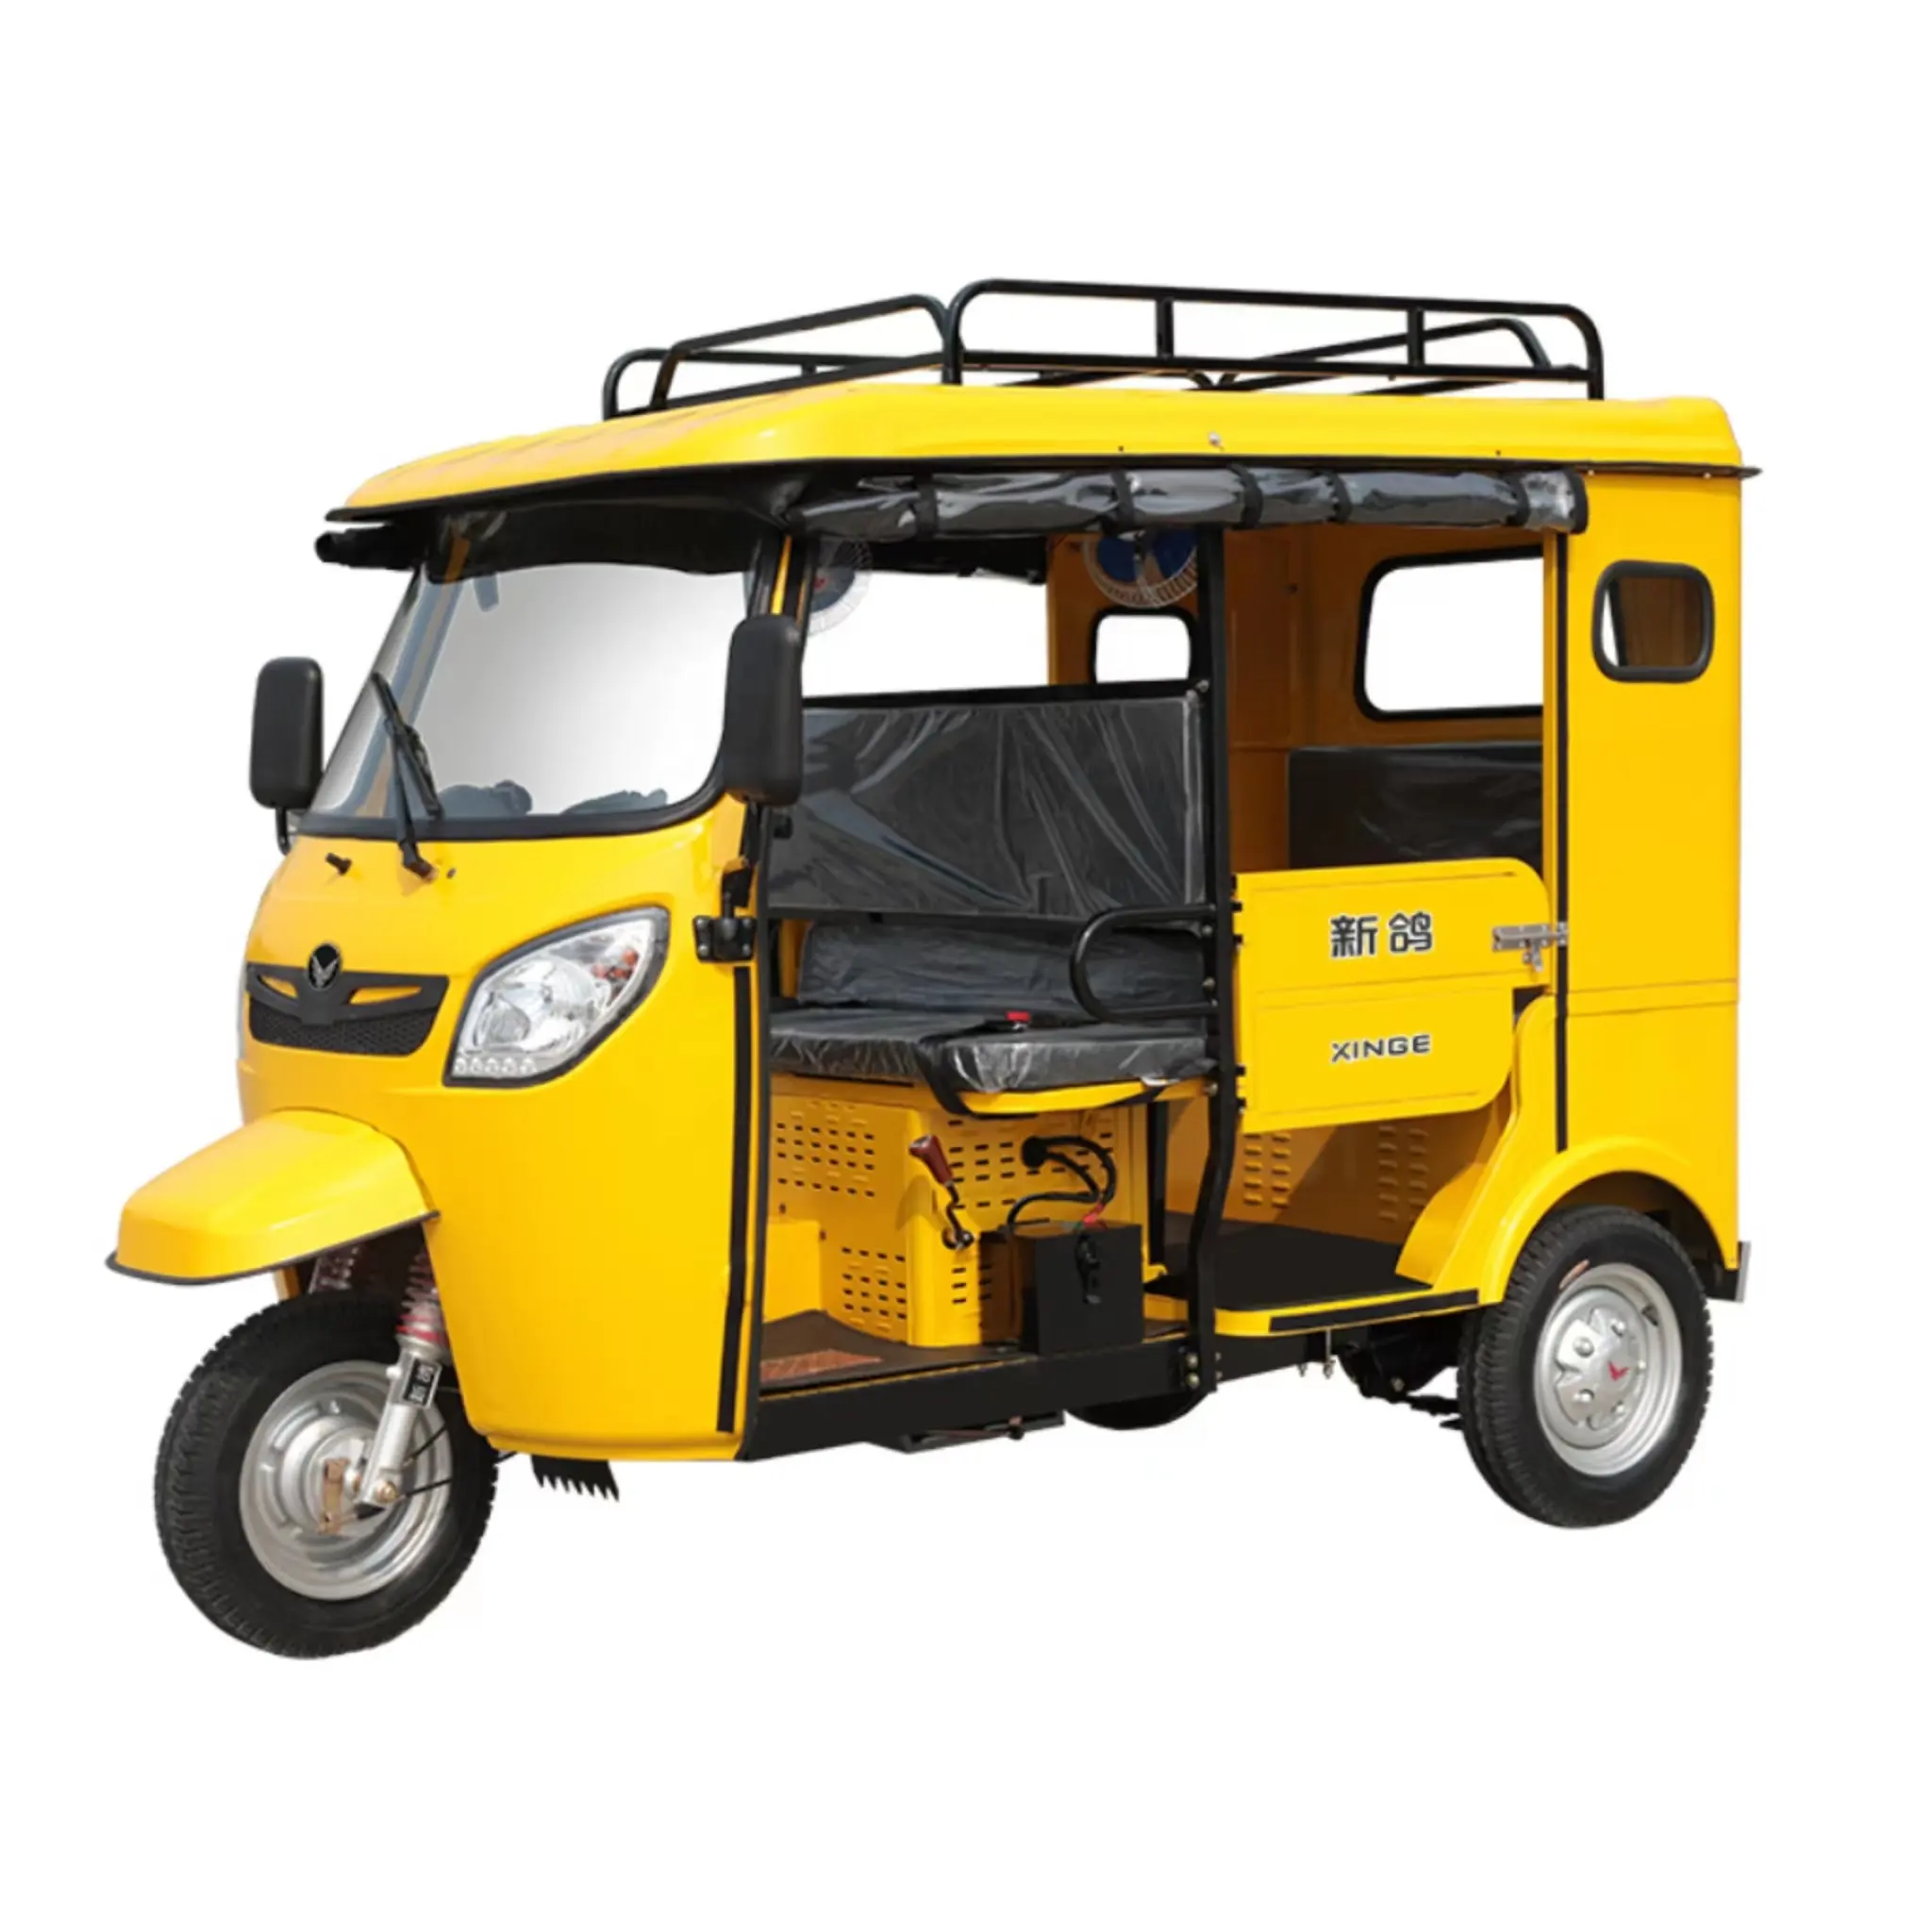 Dành cho người lớn hành khách Xăng Tuk tuk tự động xe kéo xe máy ba bánh thiết kế mới ba bánh xe bajaj 3 bánh xe cho hành khách